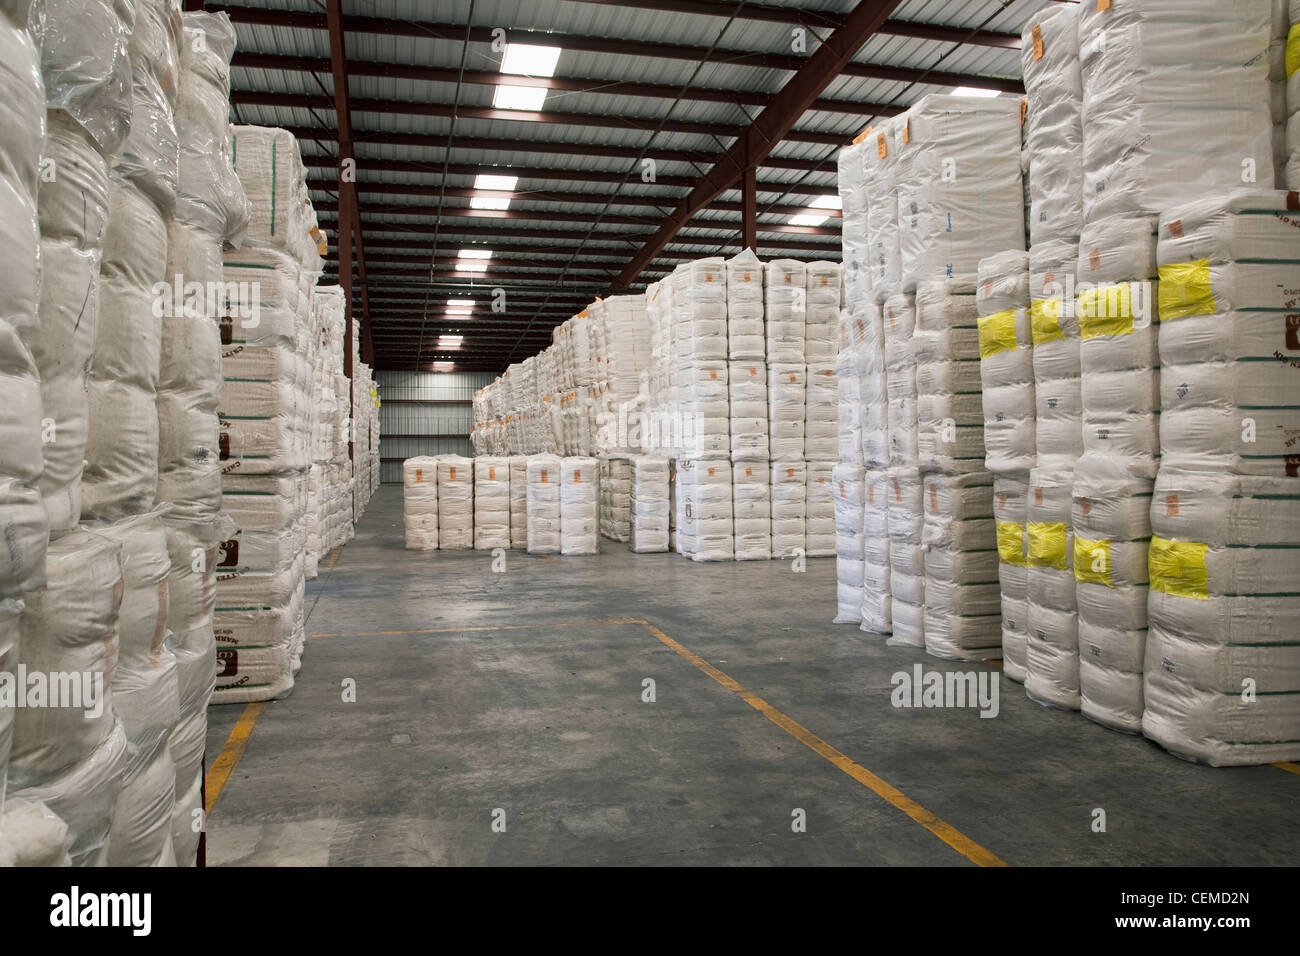 Agriculture - balles de coton empilés et stockés dans un entrepôt / est de l'Arkansas, USA. Banque D'Images